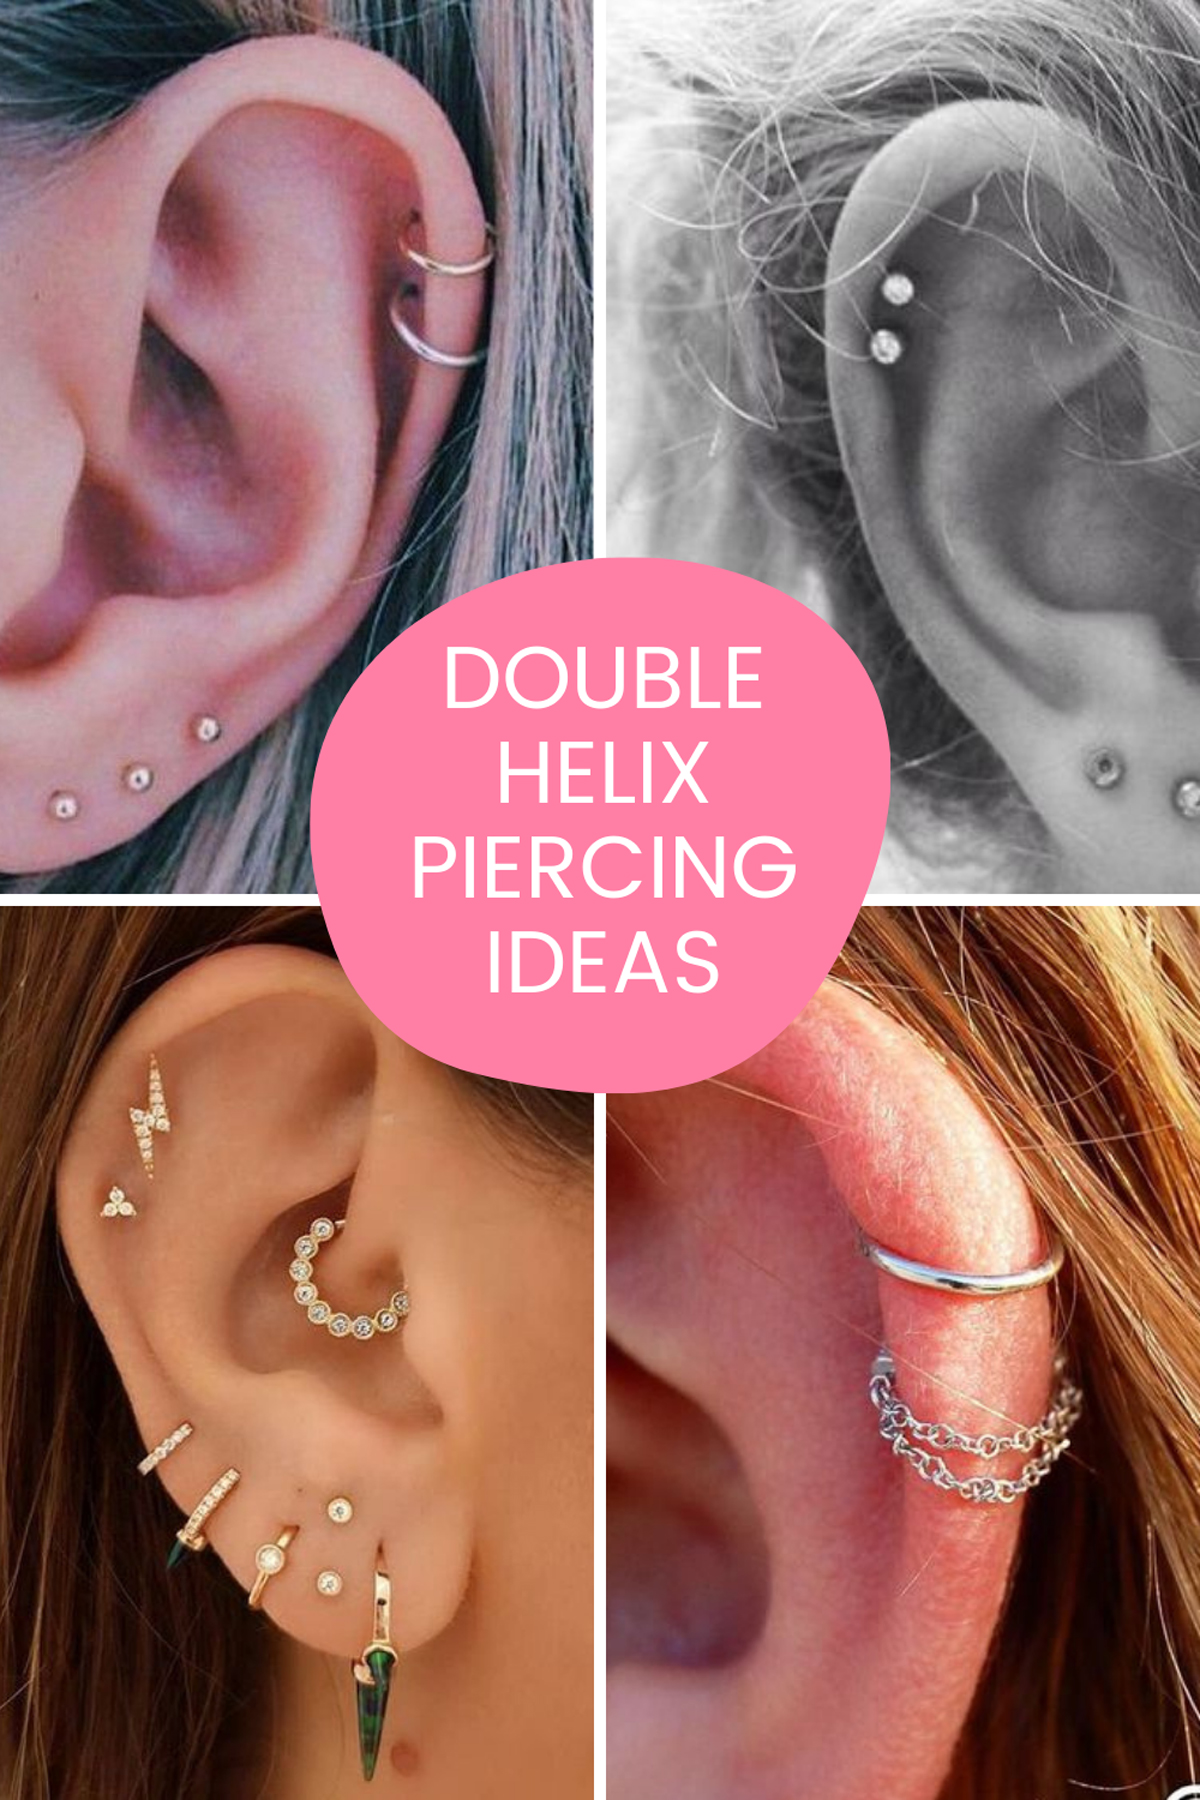 Double Helix Piercing Ideas